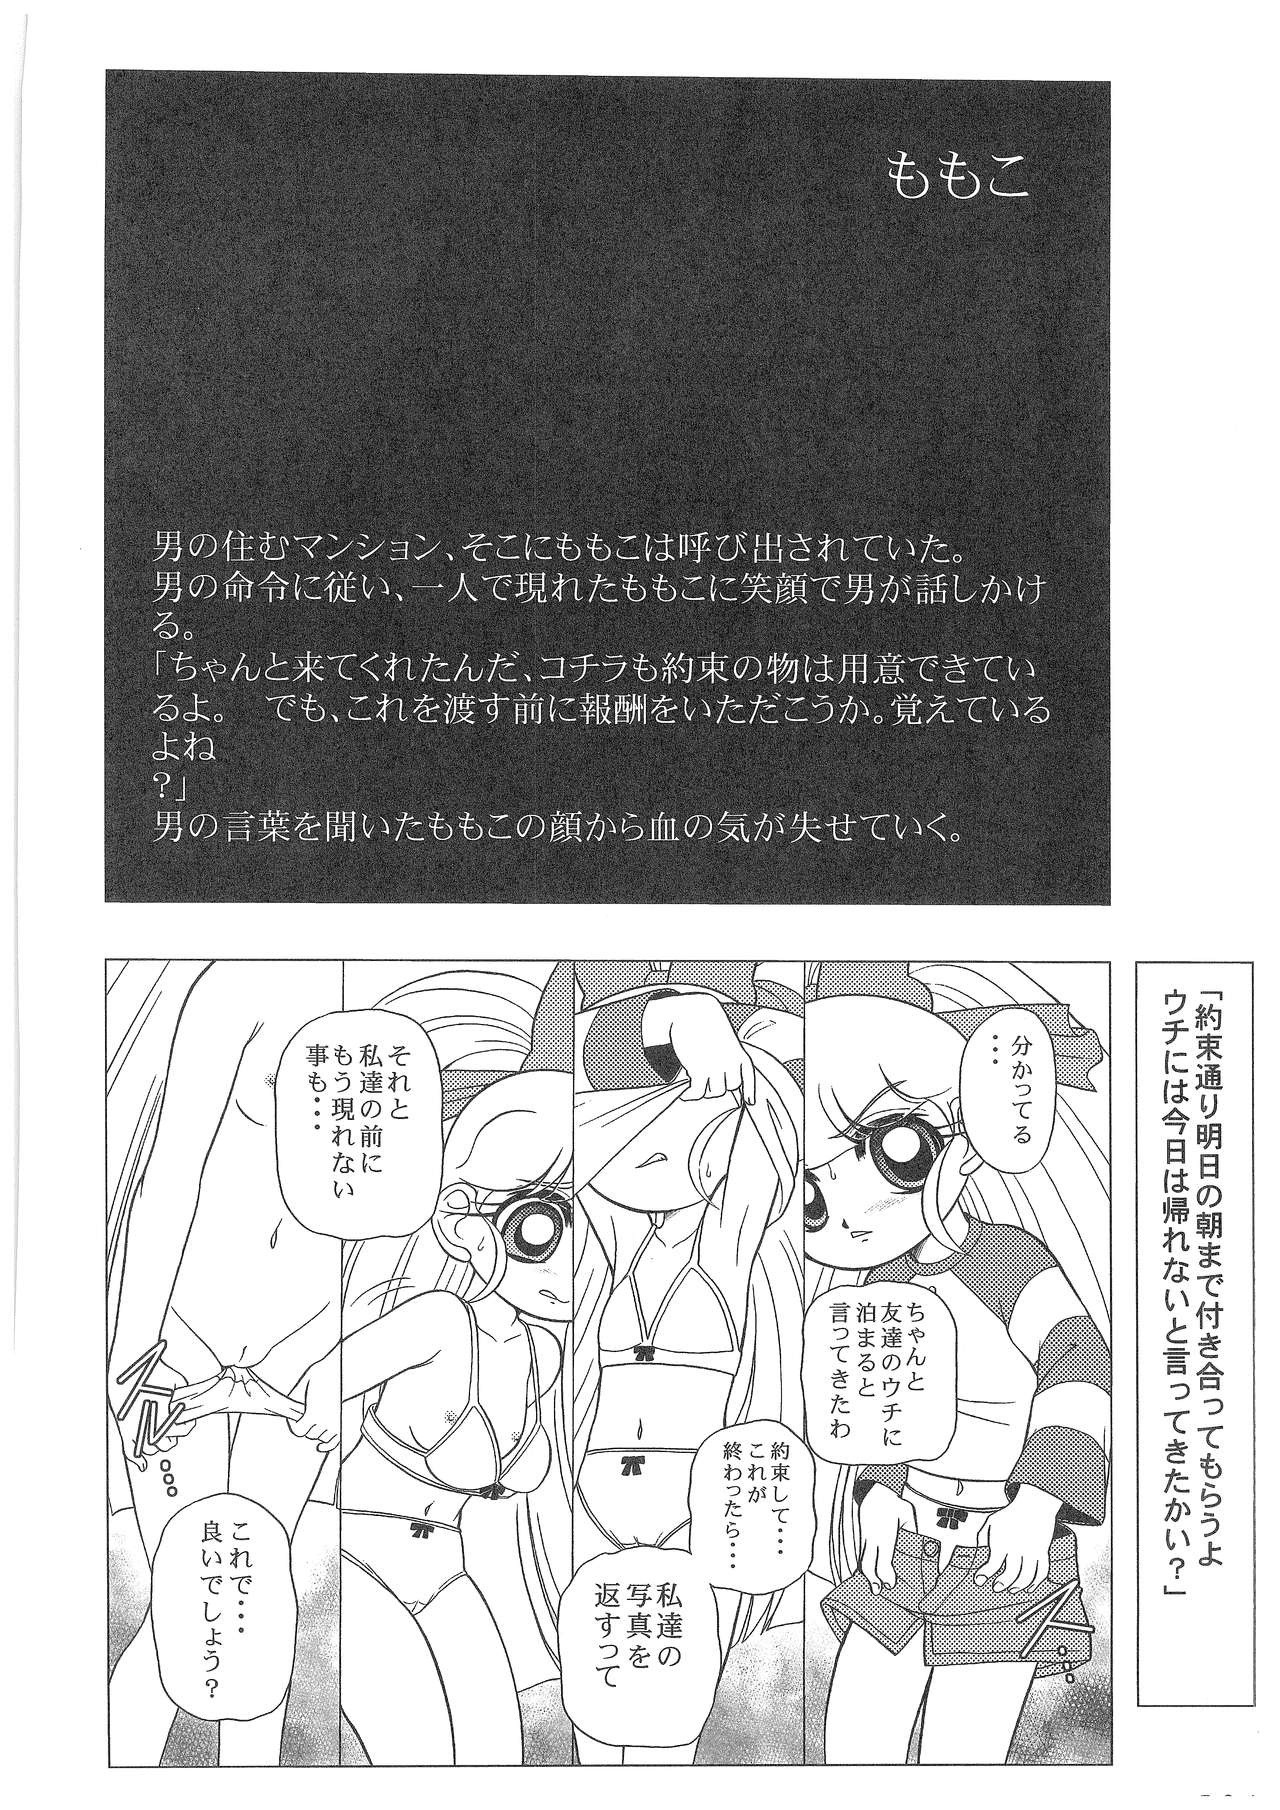 Power Puff Girls Z 001 hentai manga picture 22